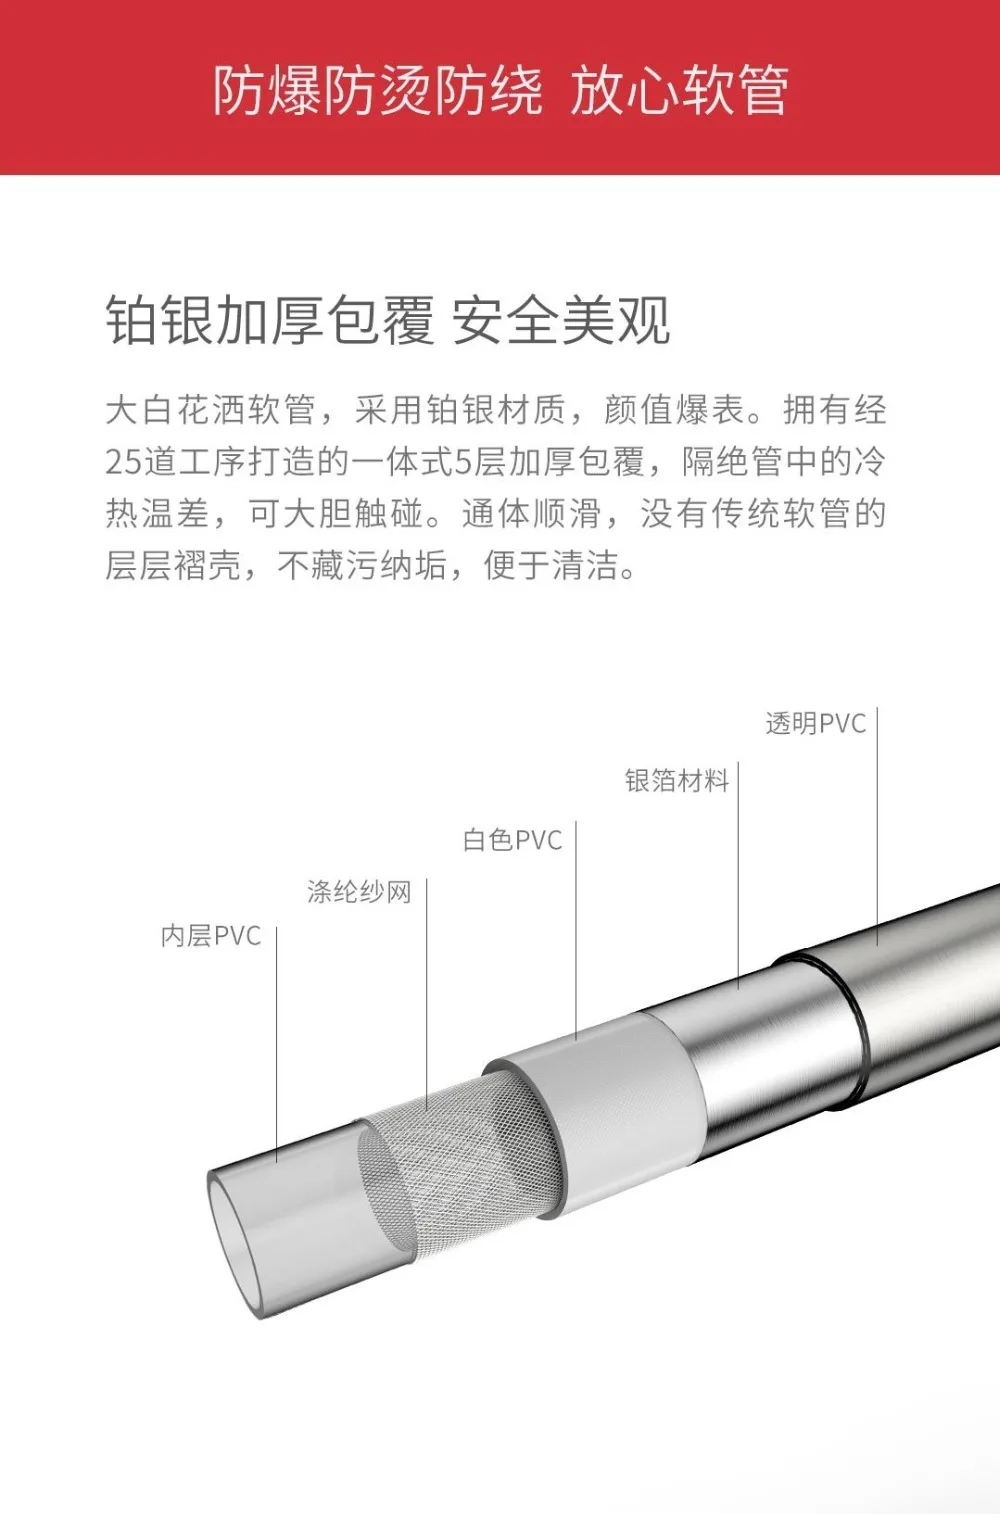 Набор душевых шлангов xiaomi mijia 120 мм, взрывозащищенный шланг длиной 1,6 м, подходит для ванной комнаты